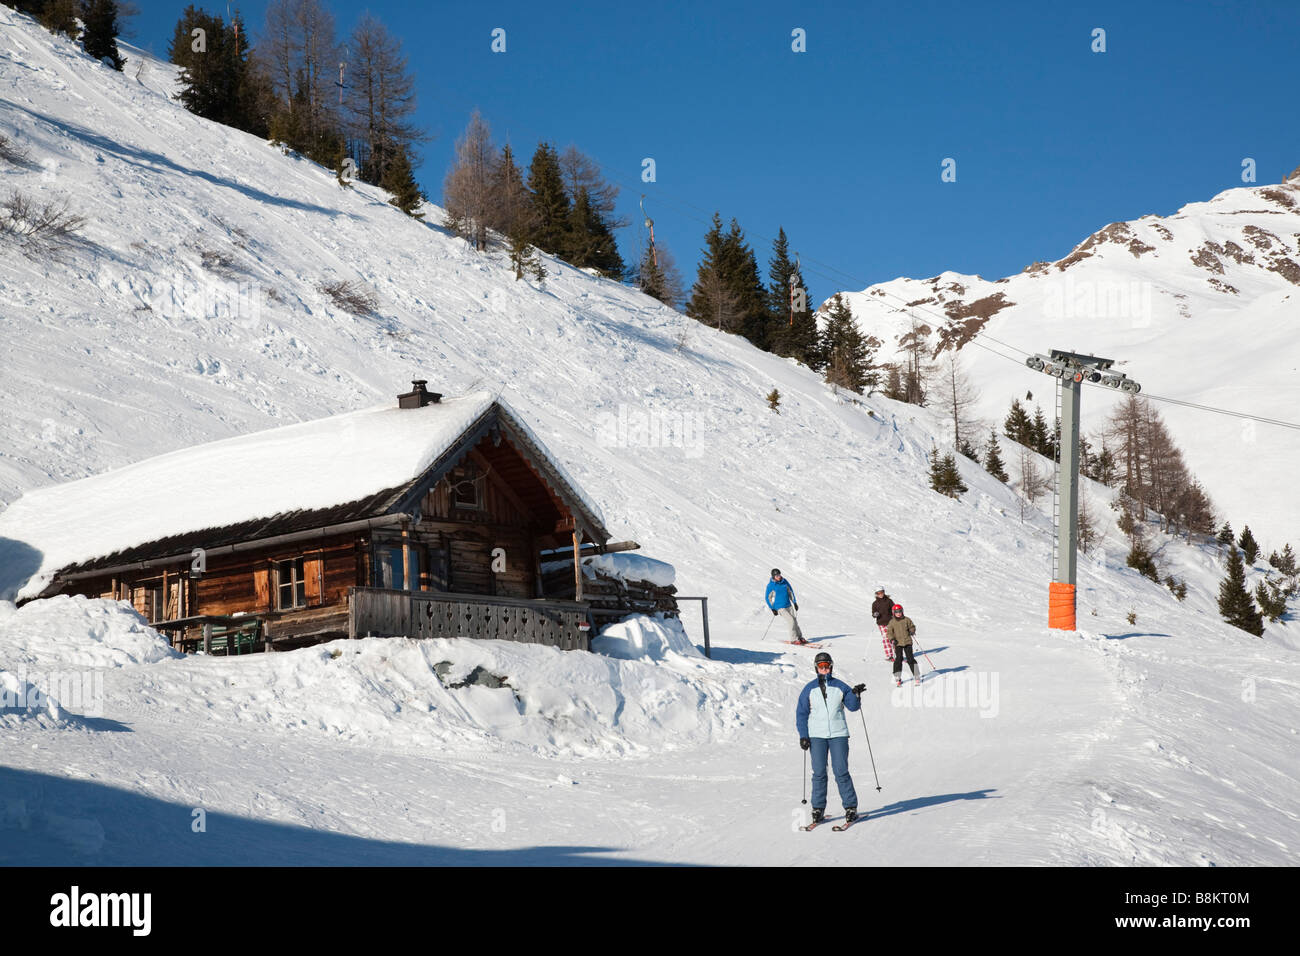 Le skieur alpin ski alpin bas Rauriser Hochalmbahnen Schwarzwand sur les pistes de ski en hiver dans les Alpes autrichiennes. Rauris Autriche Europe Banque D'Images